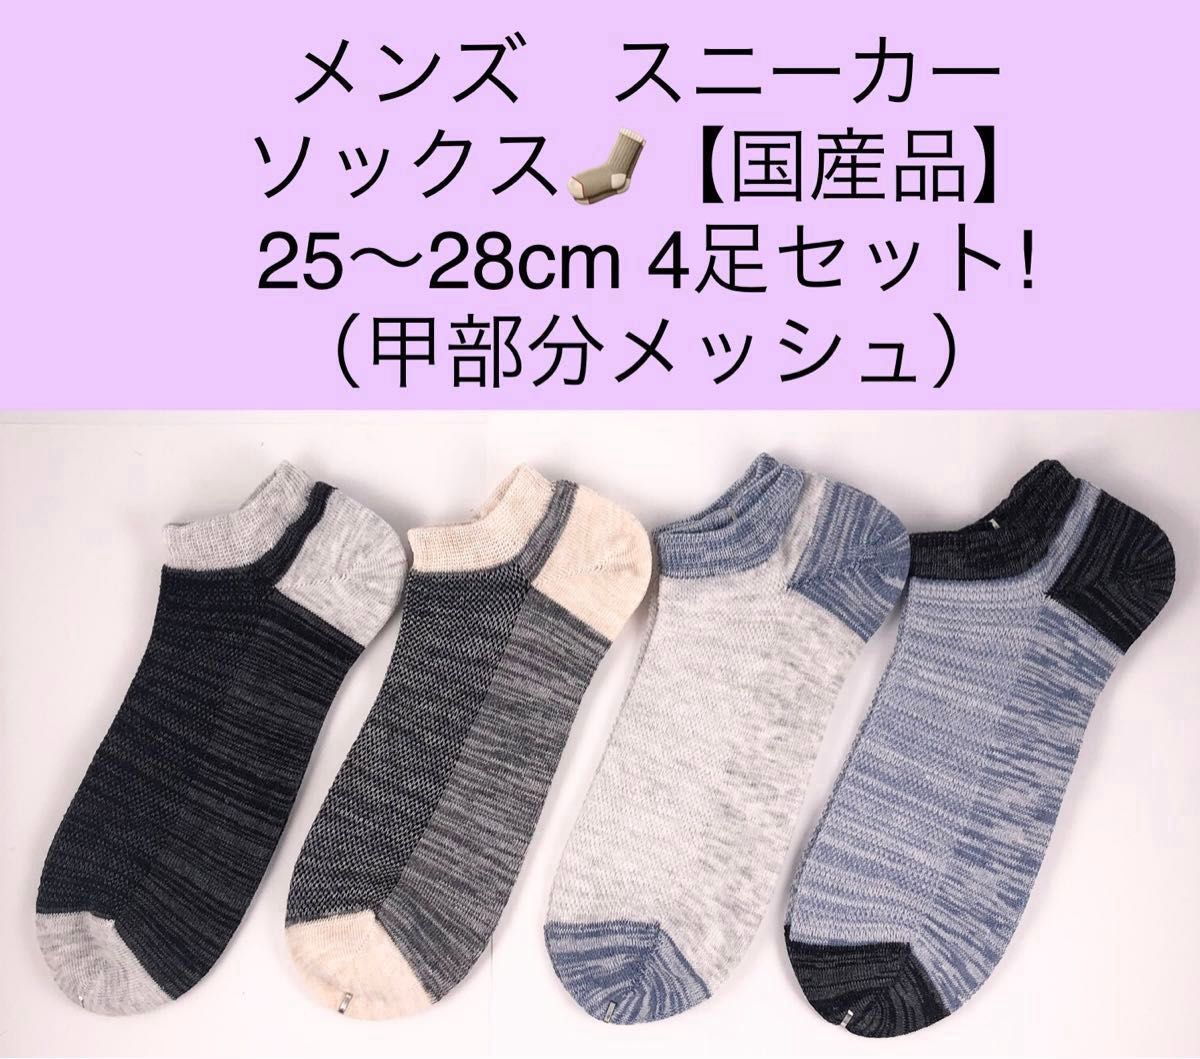 メンズ スニーカー ソックス【国産品】25〜28cm 4足セット!